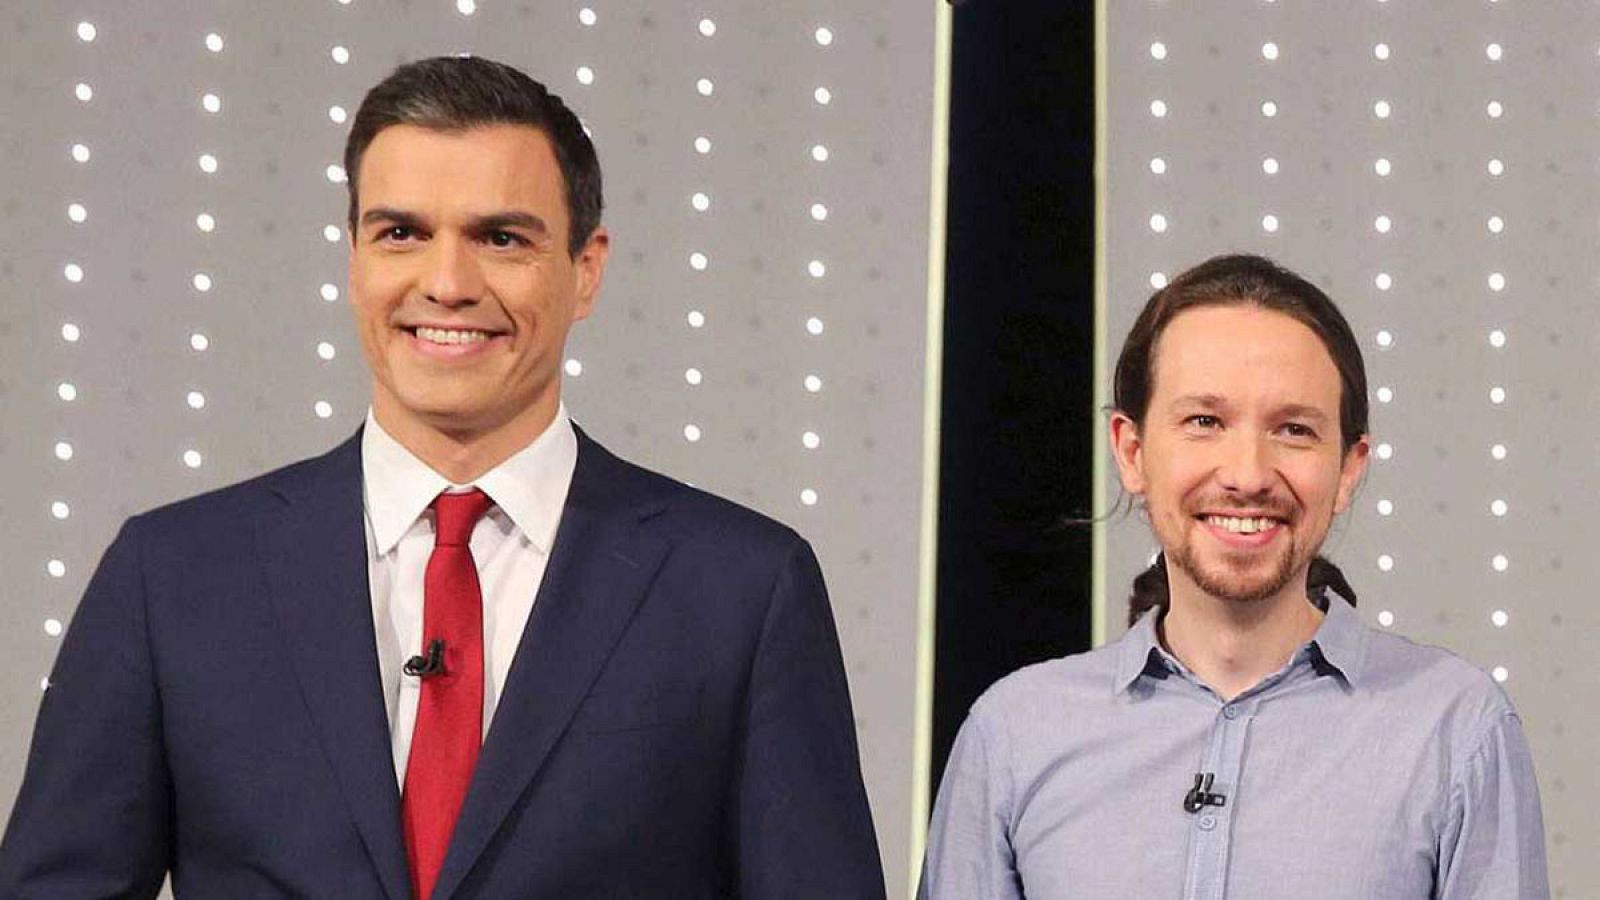 El líder del PSOE, Pedro Sánchez, junto a su homólogo en Podemos, Pablo Iglesias